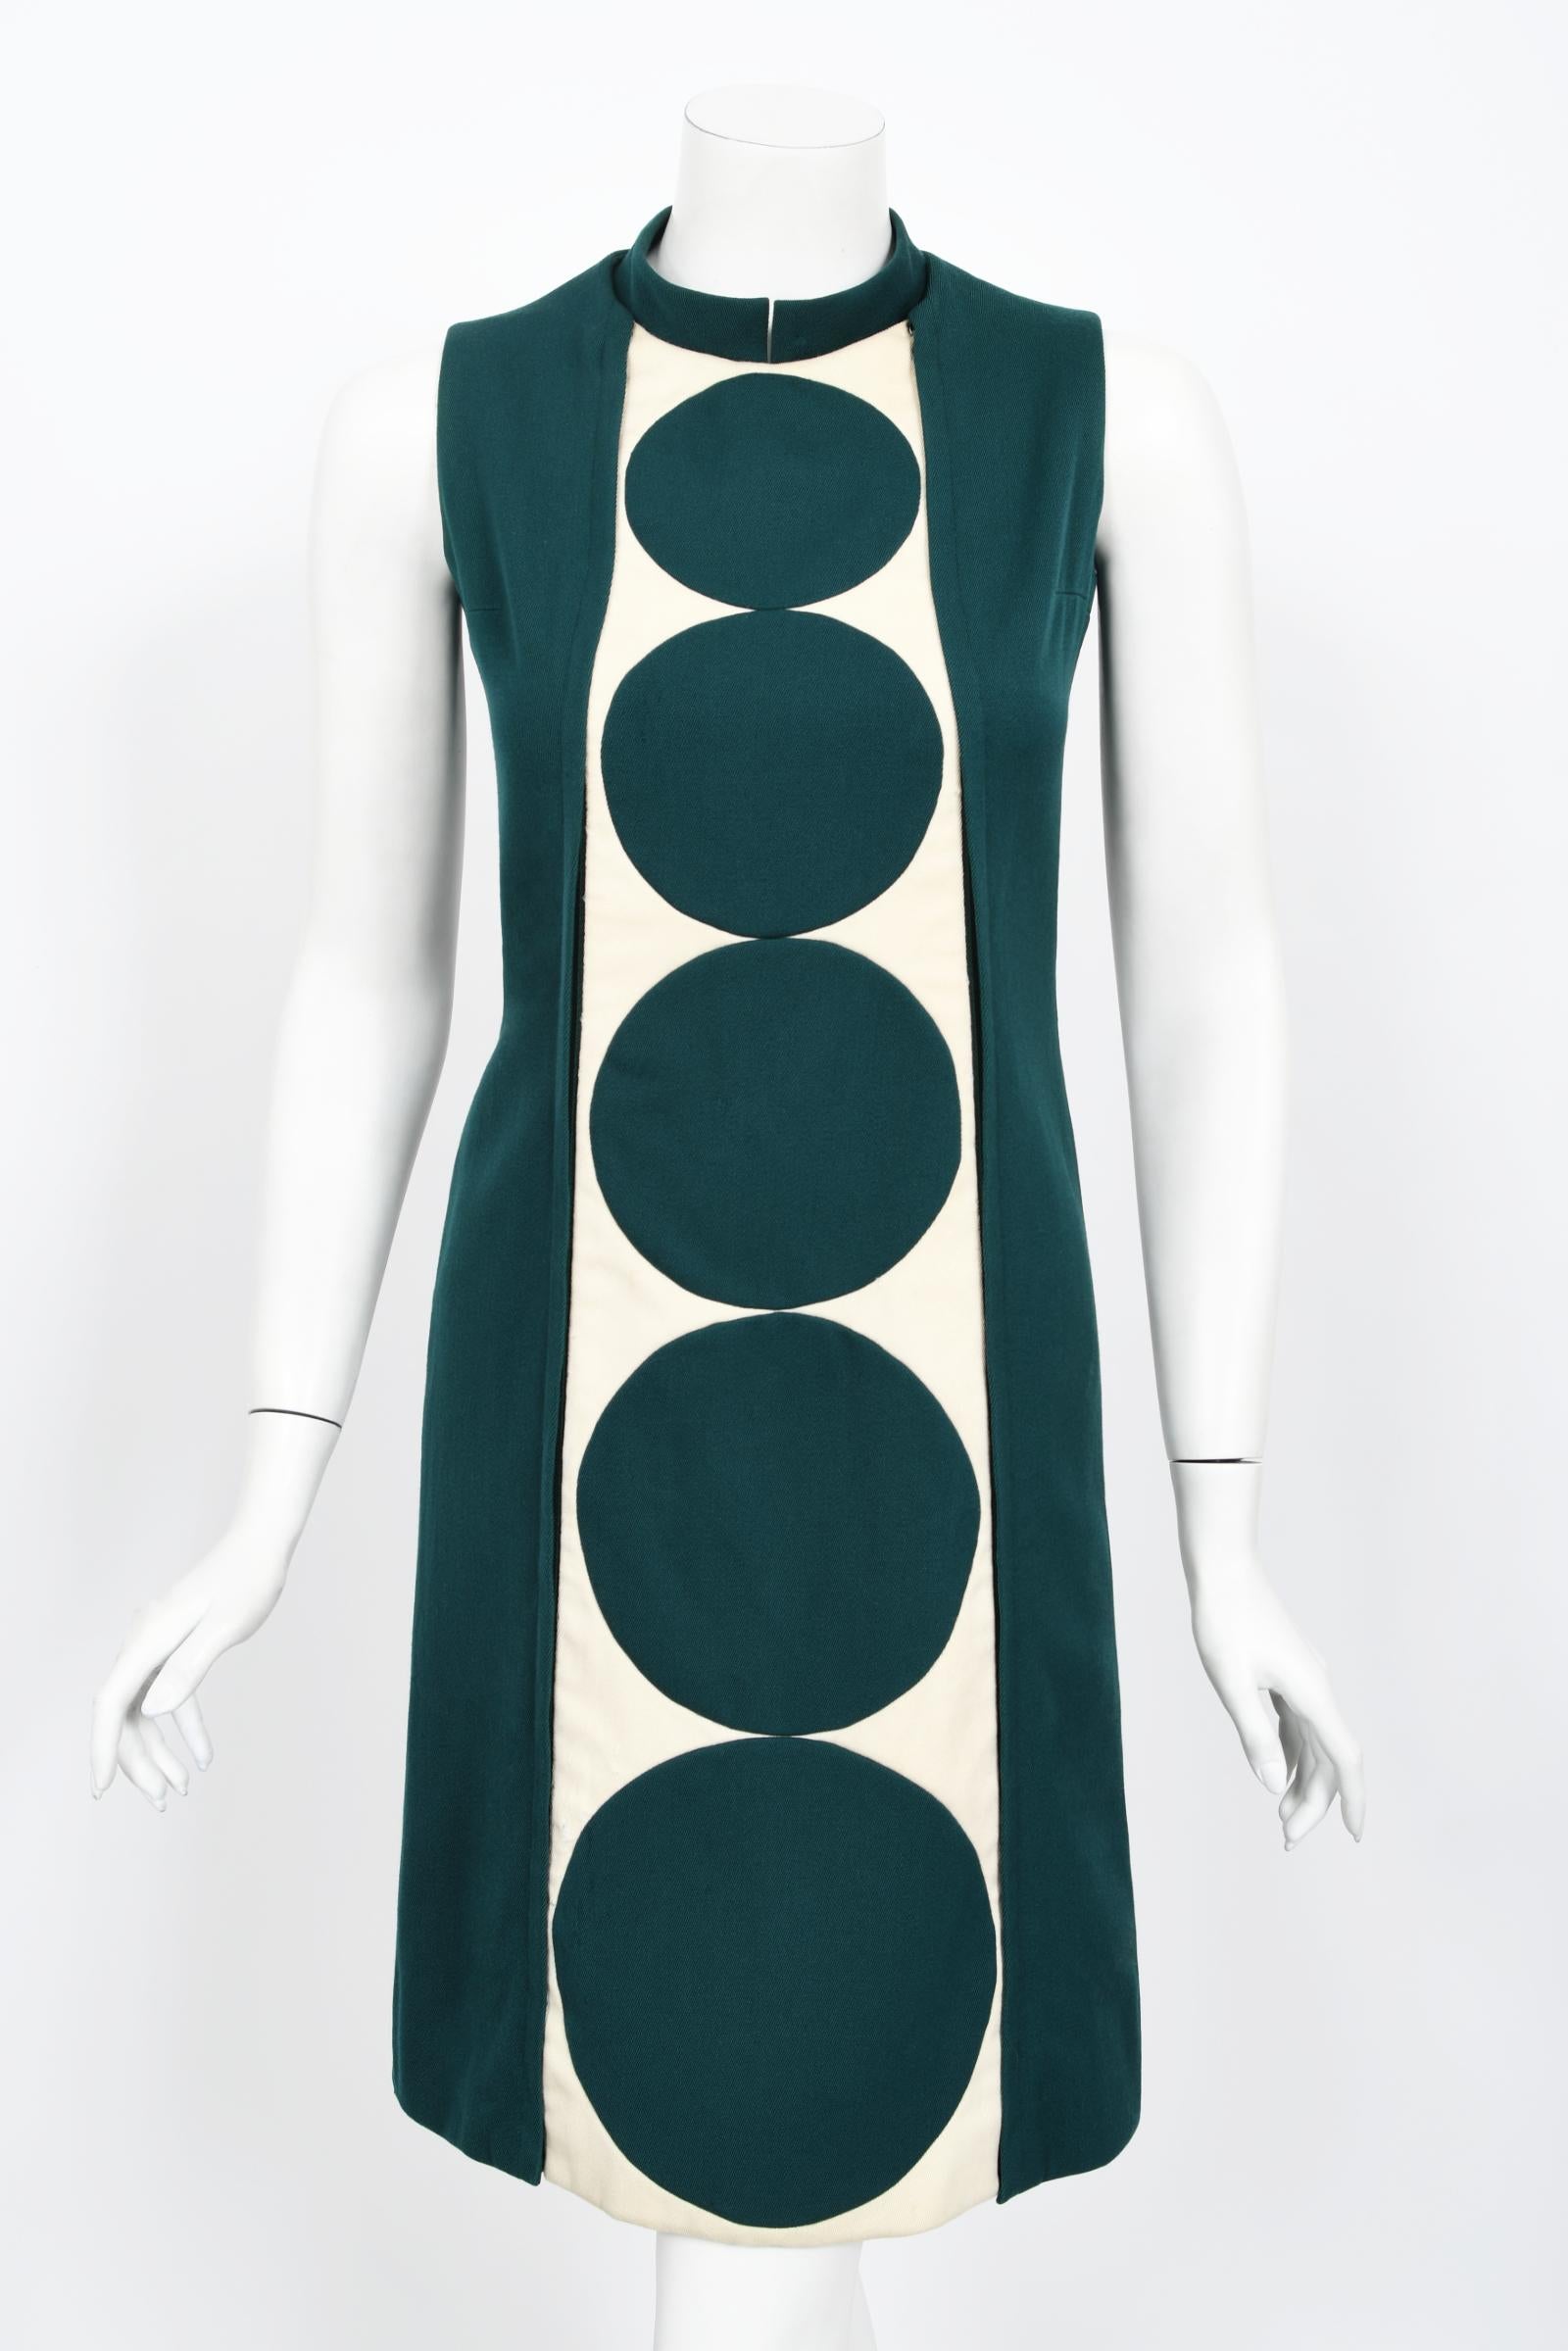 Vintage 1966 Jacques Esterel Haute Couture Documented Teal Blue Op-Art Mod Dress For Sale 2